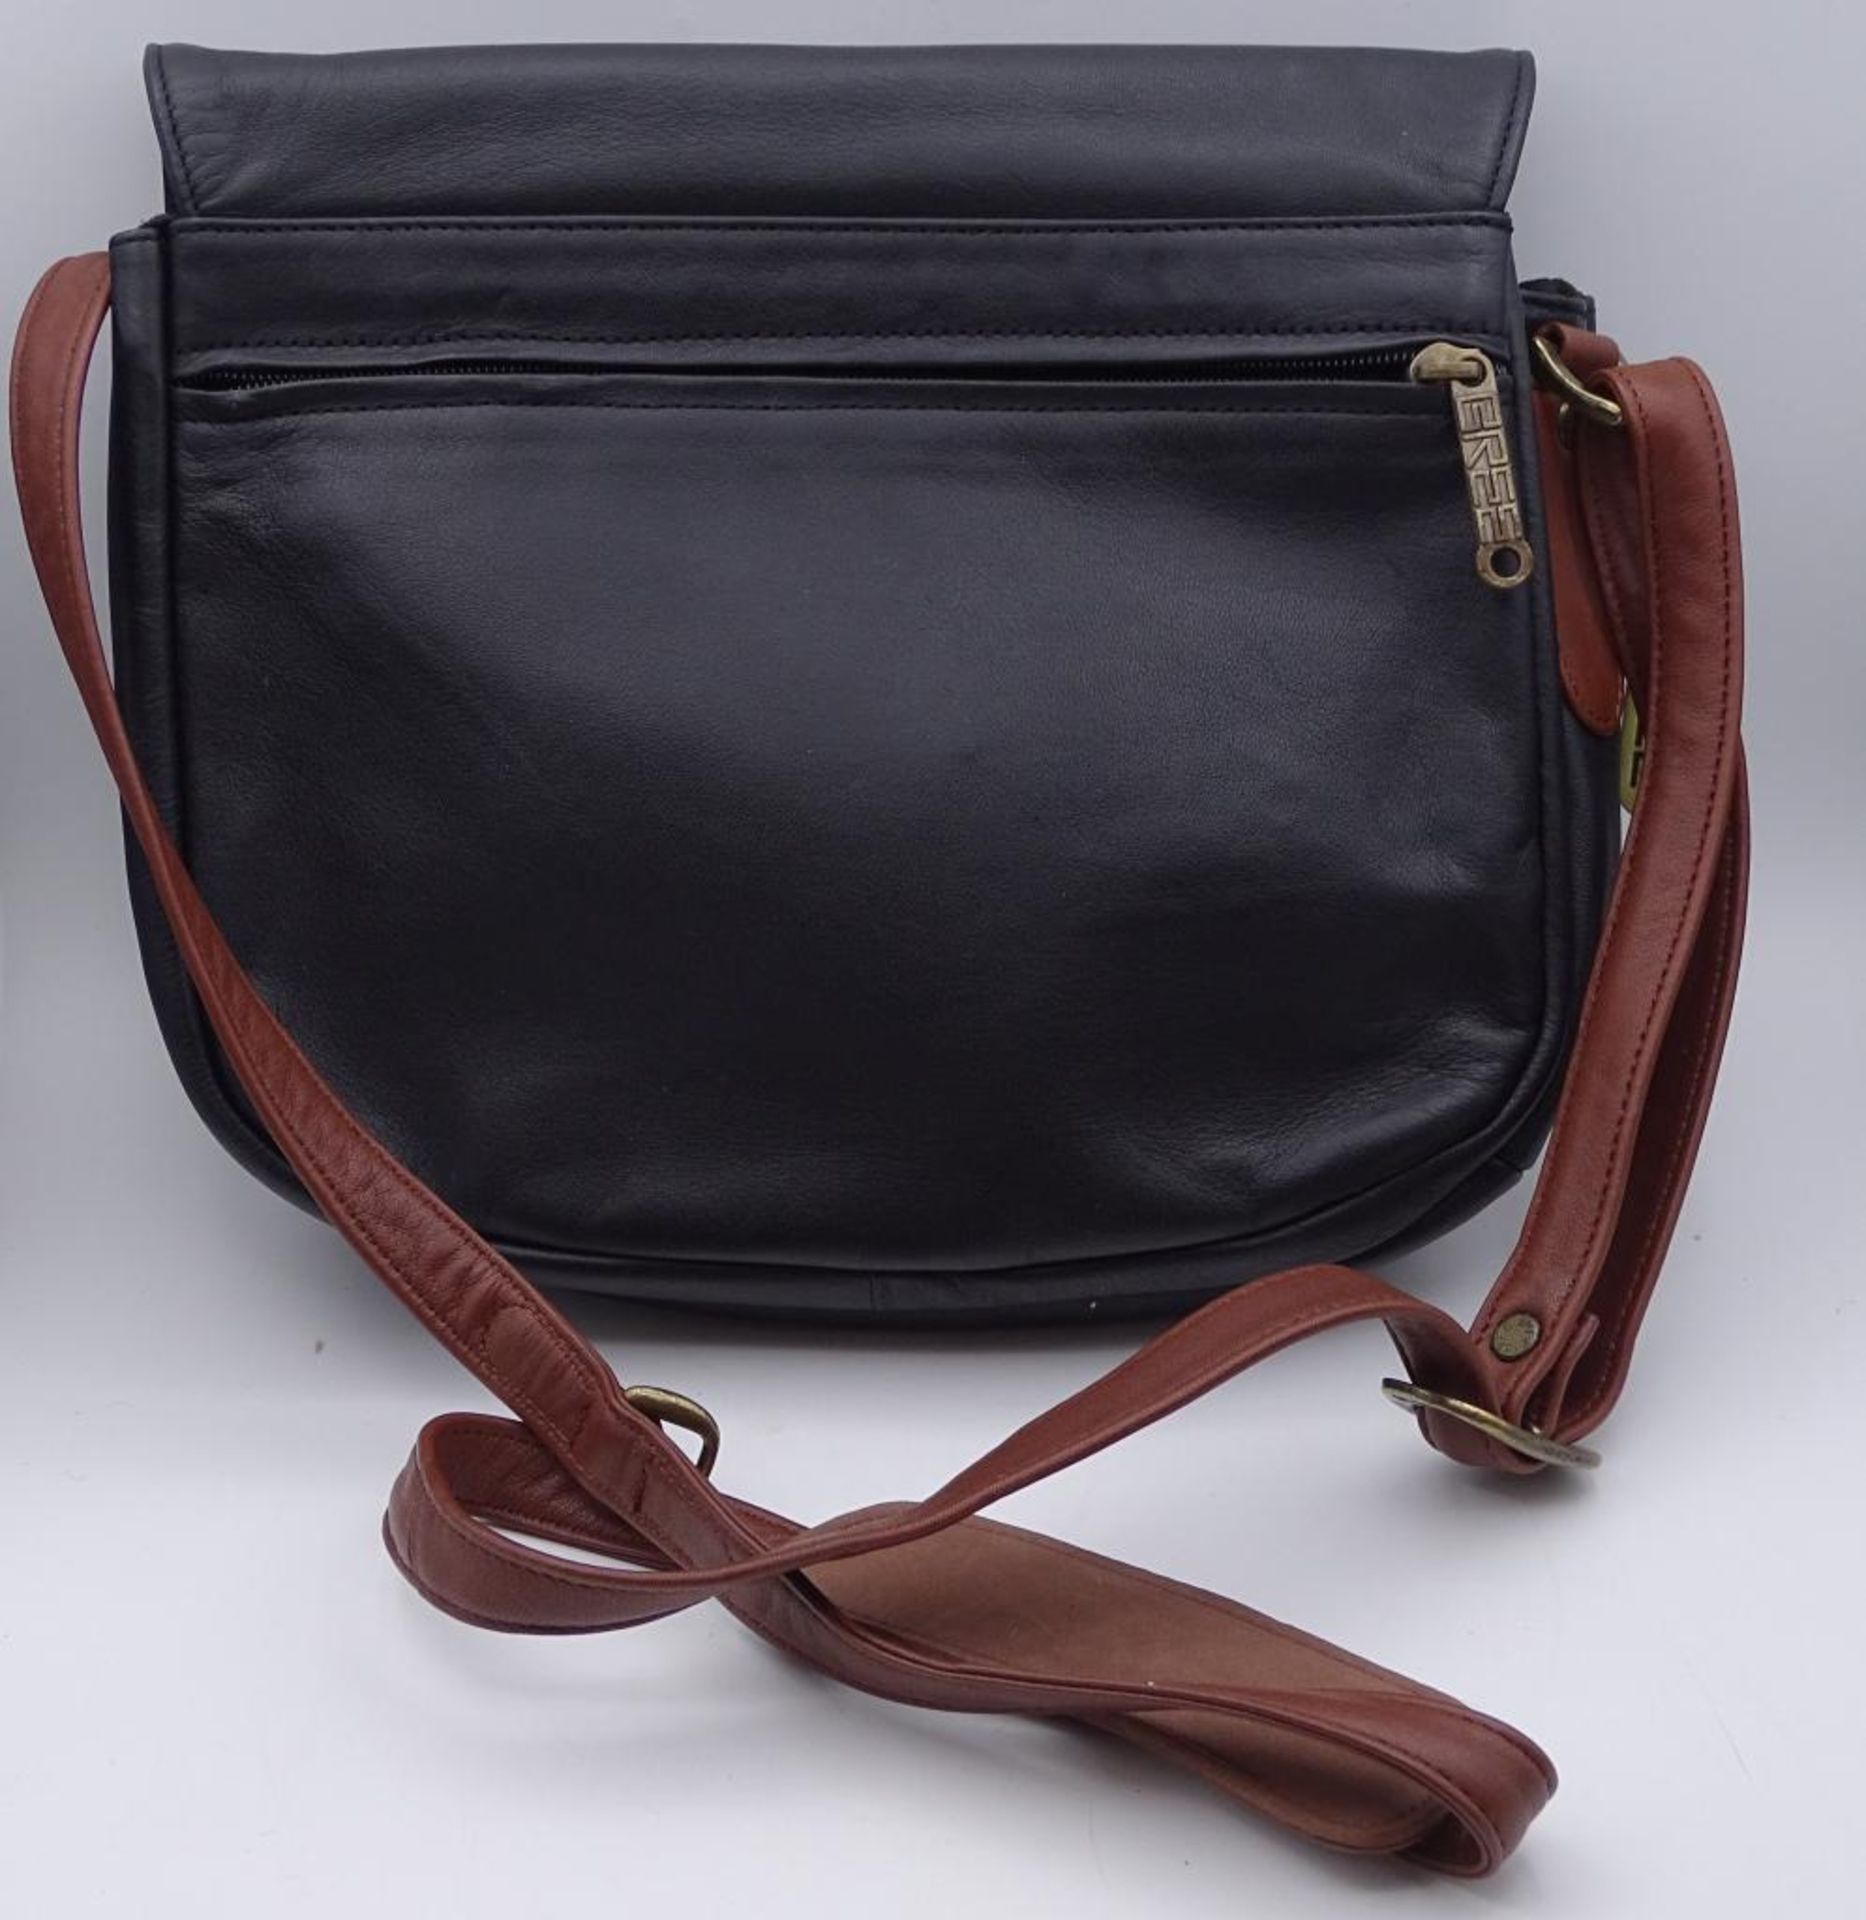 Damen Handtasche, "Bree",schwarz/braun, neuwertiger Zustand,27x23cm - Bild 6 aus 6